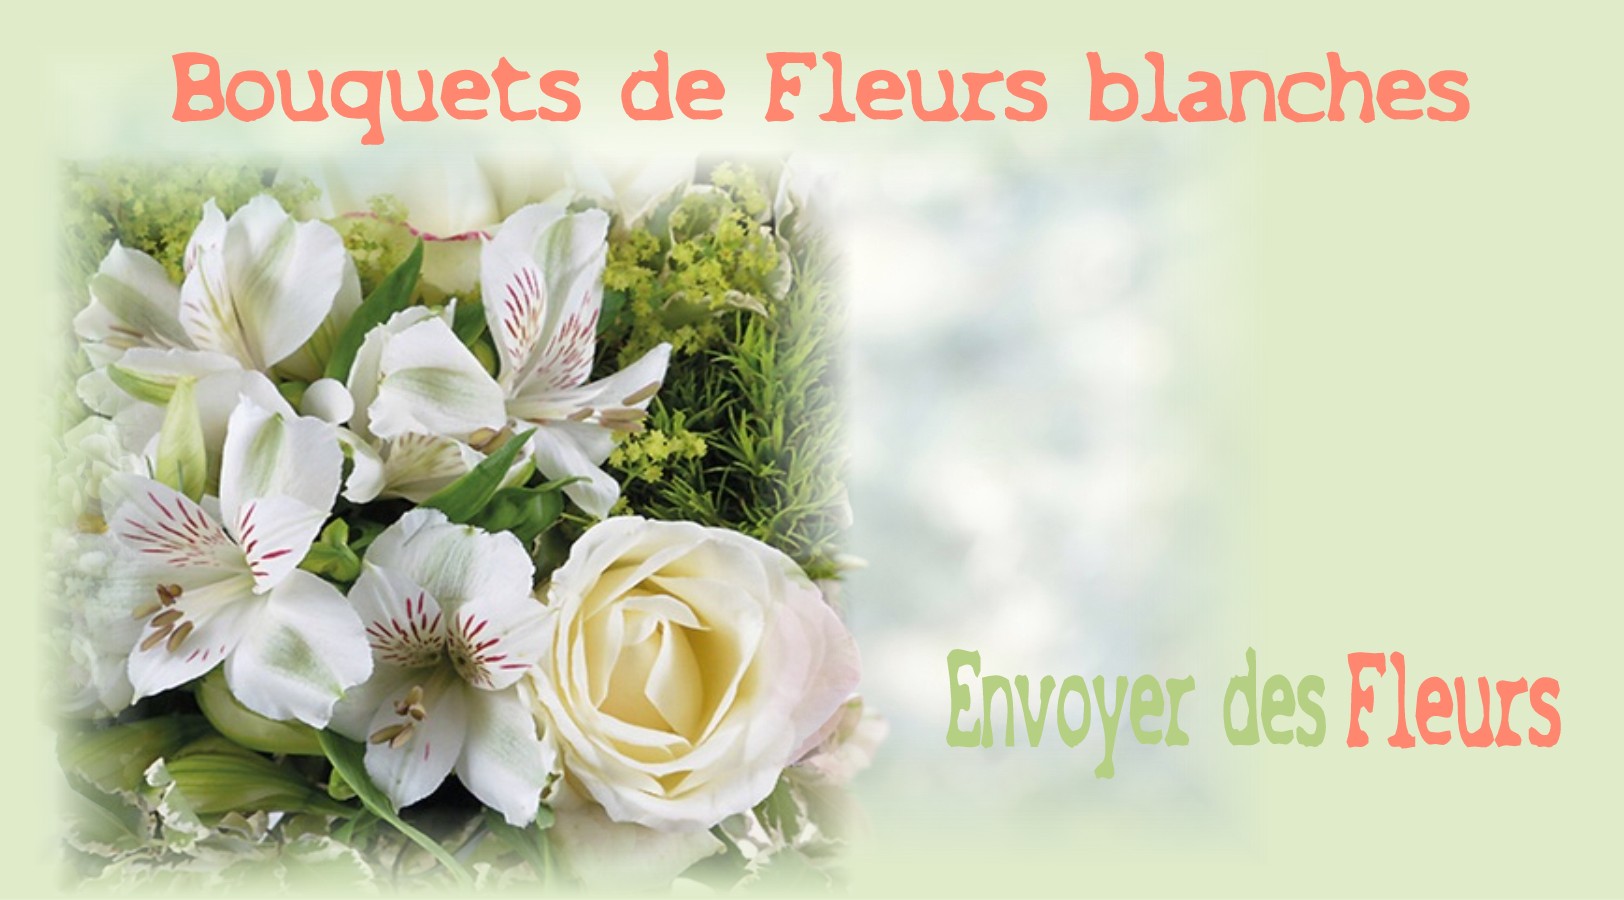 BOUQUETS DE FLEURS BLANCHES -FLEURISTE NANTES (44) - ENVOYER DES FLEURS